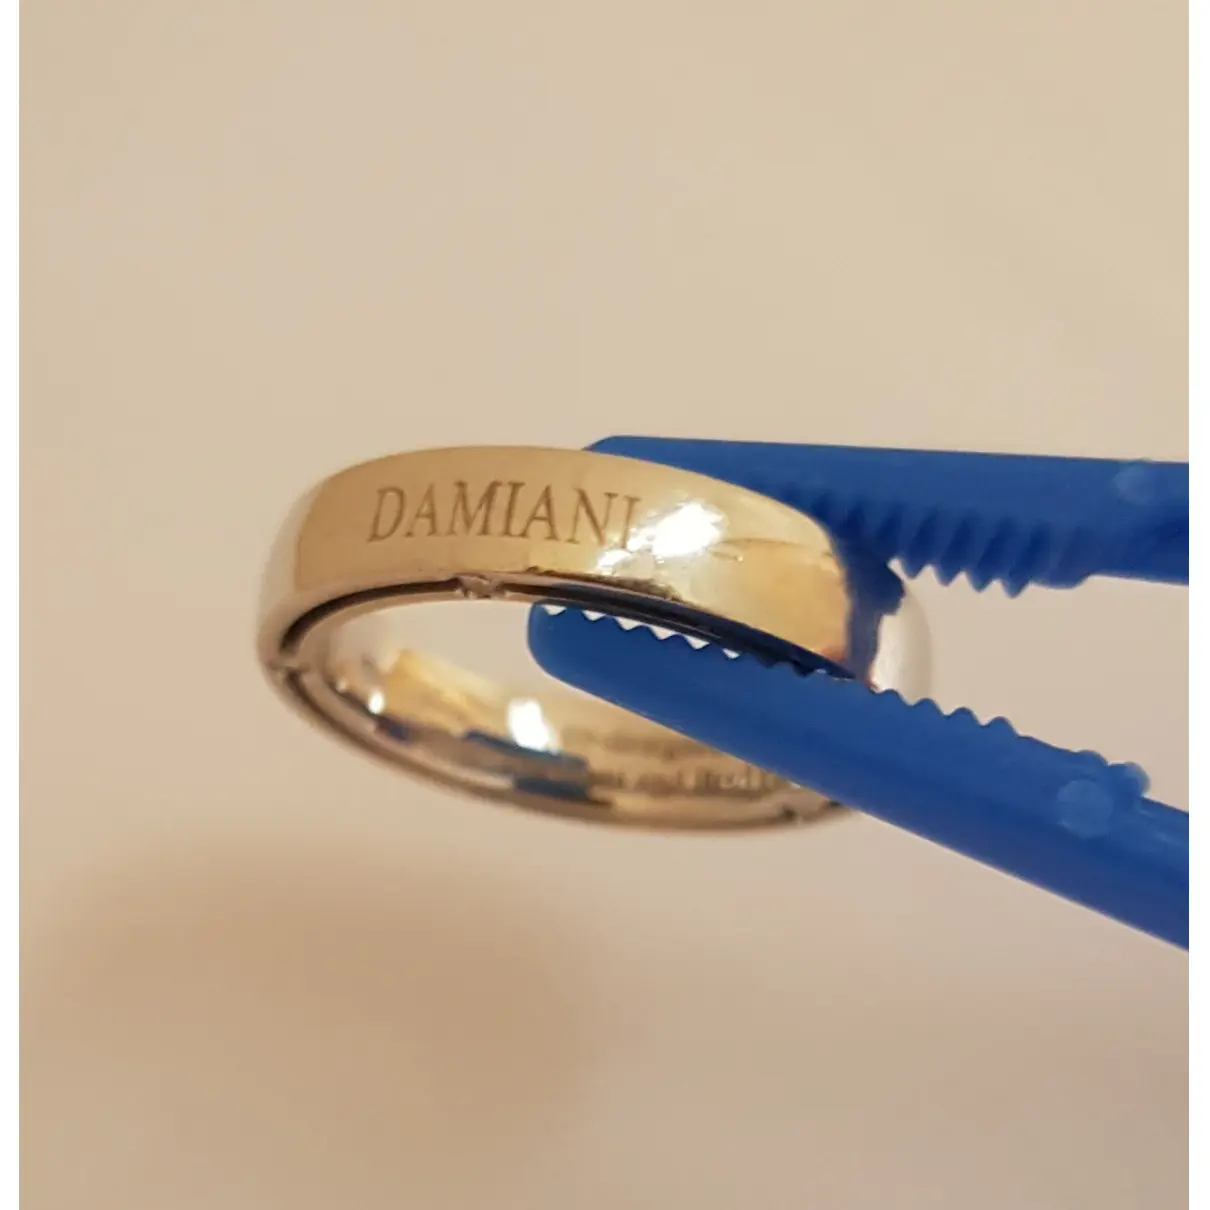 Buy Damiani White gold ring online